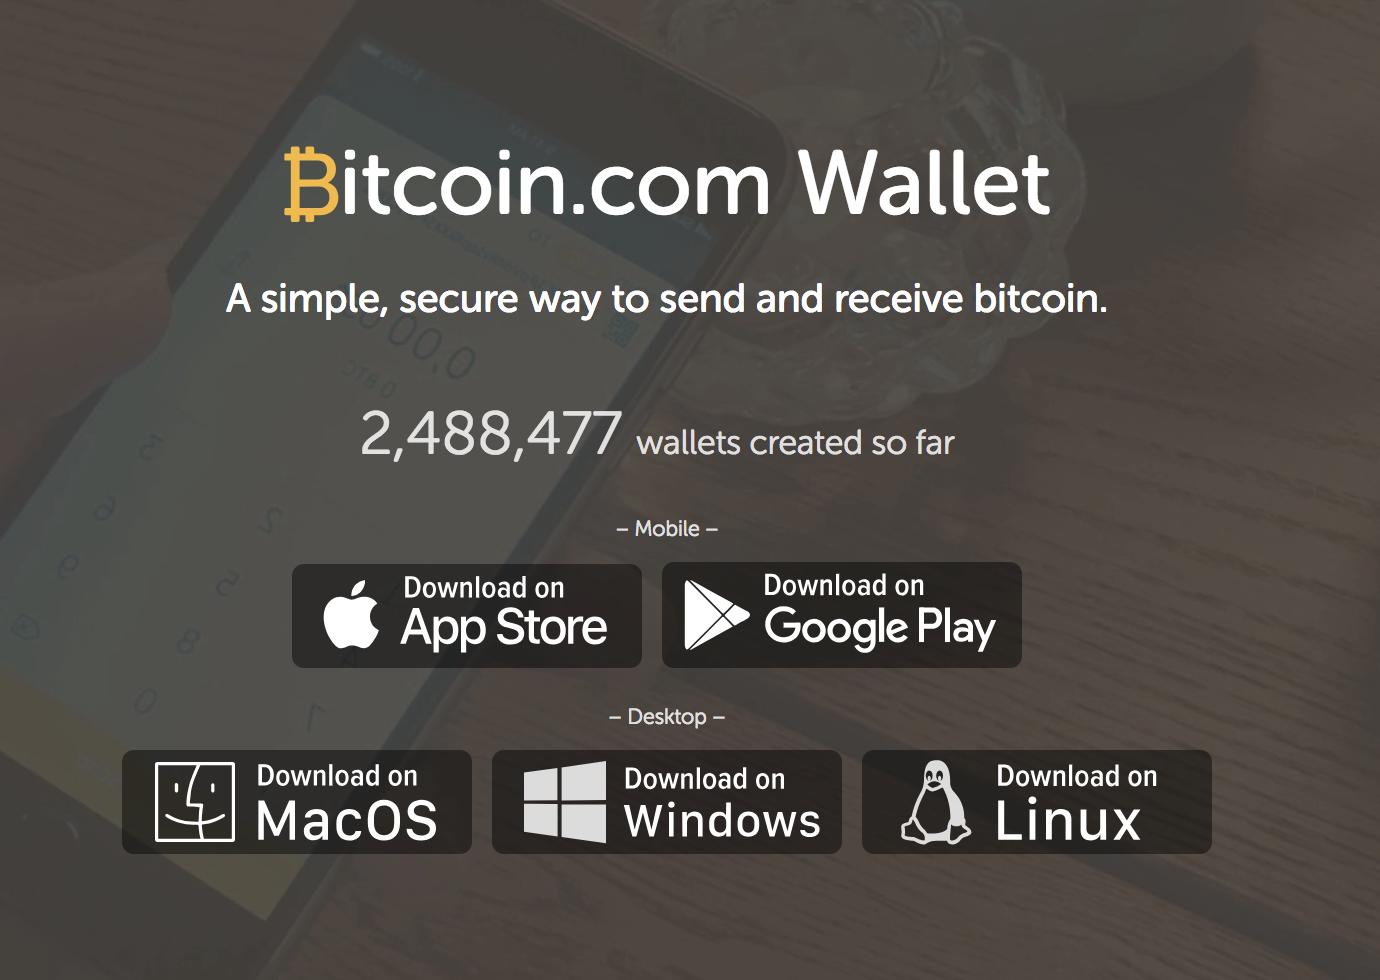 Bitcoin.com's wallets